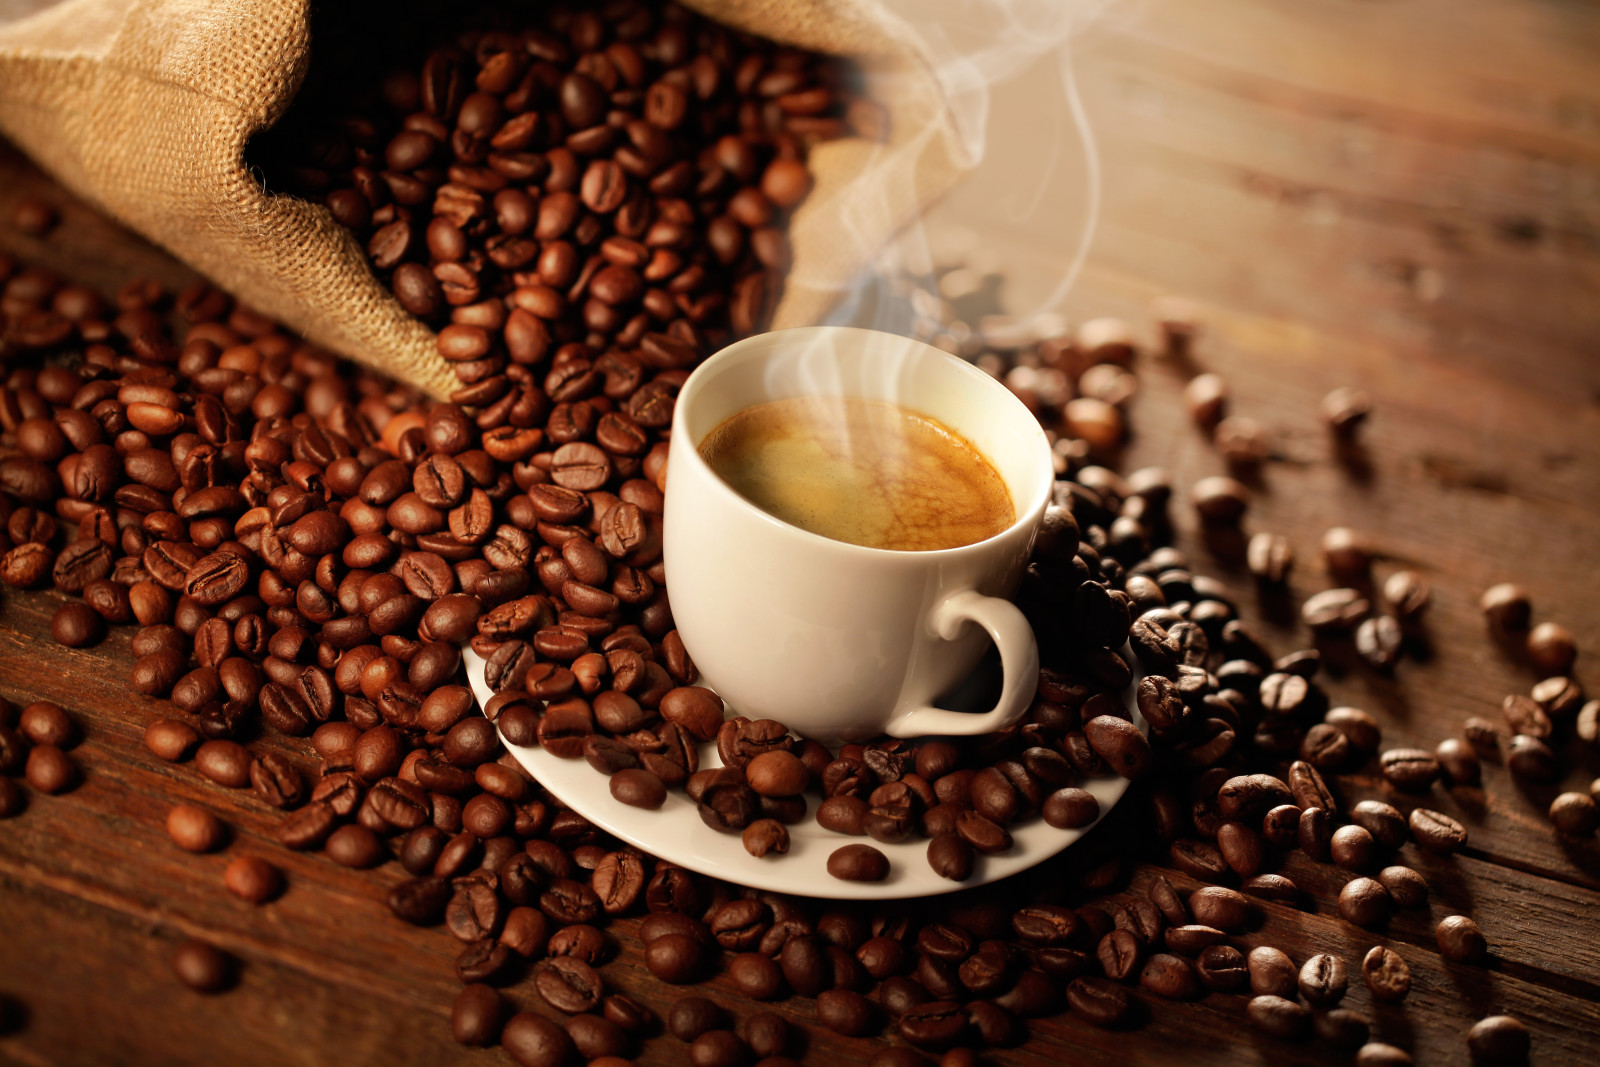 กาแฟ, ถุง, โฟม, เมล็ดกาแฟ, กลิ่นหอมของกาแฟ, ครีมกาแฟอโรมา